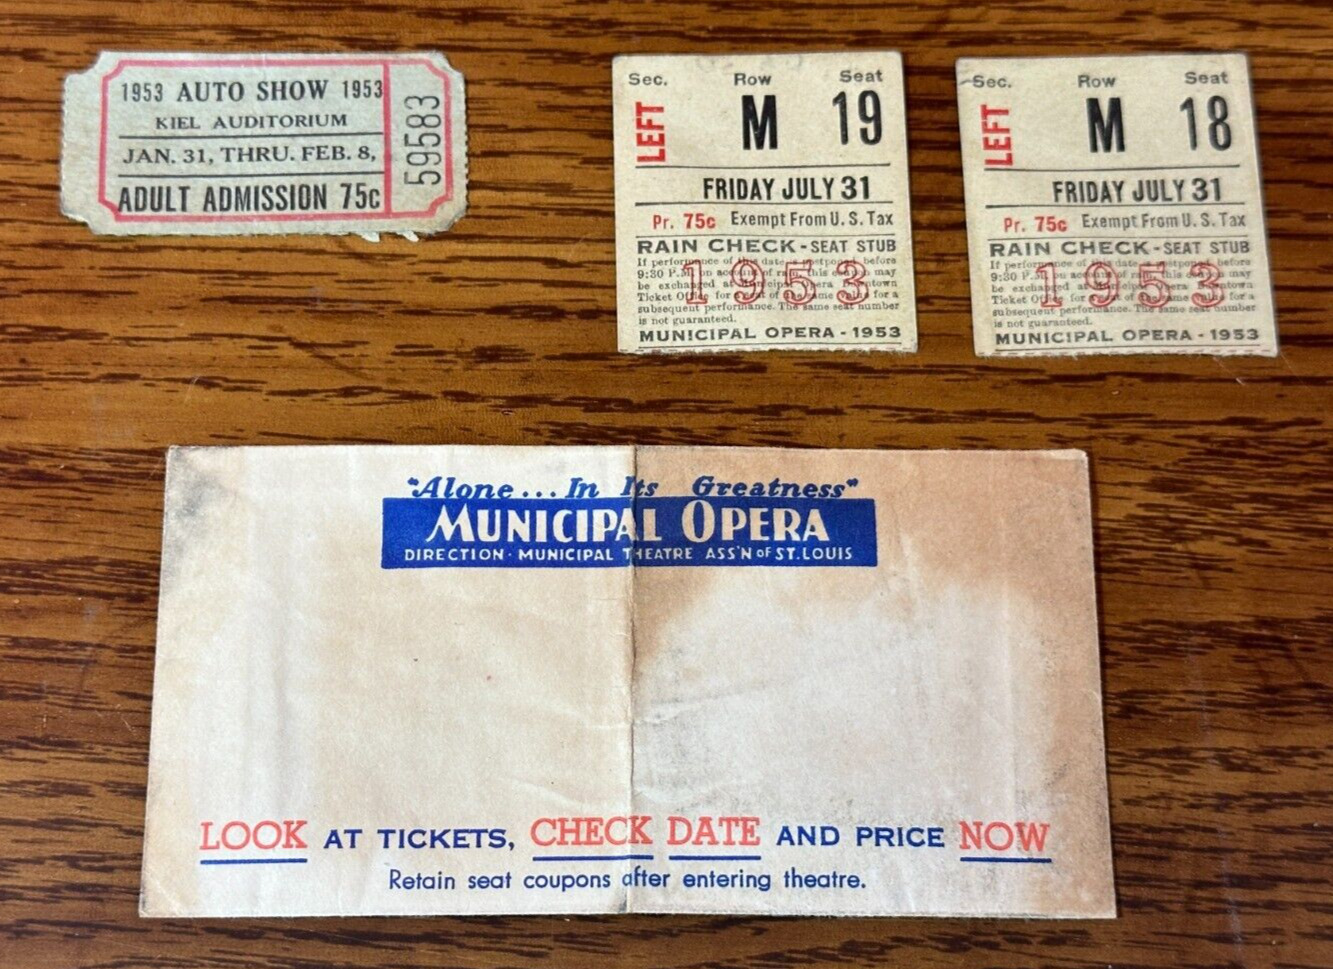 4 VTG 1953 St Louis MO pieces of ephemera auto show @ Kiel 2 Muny ticket stubs